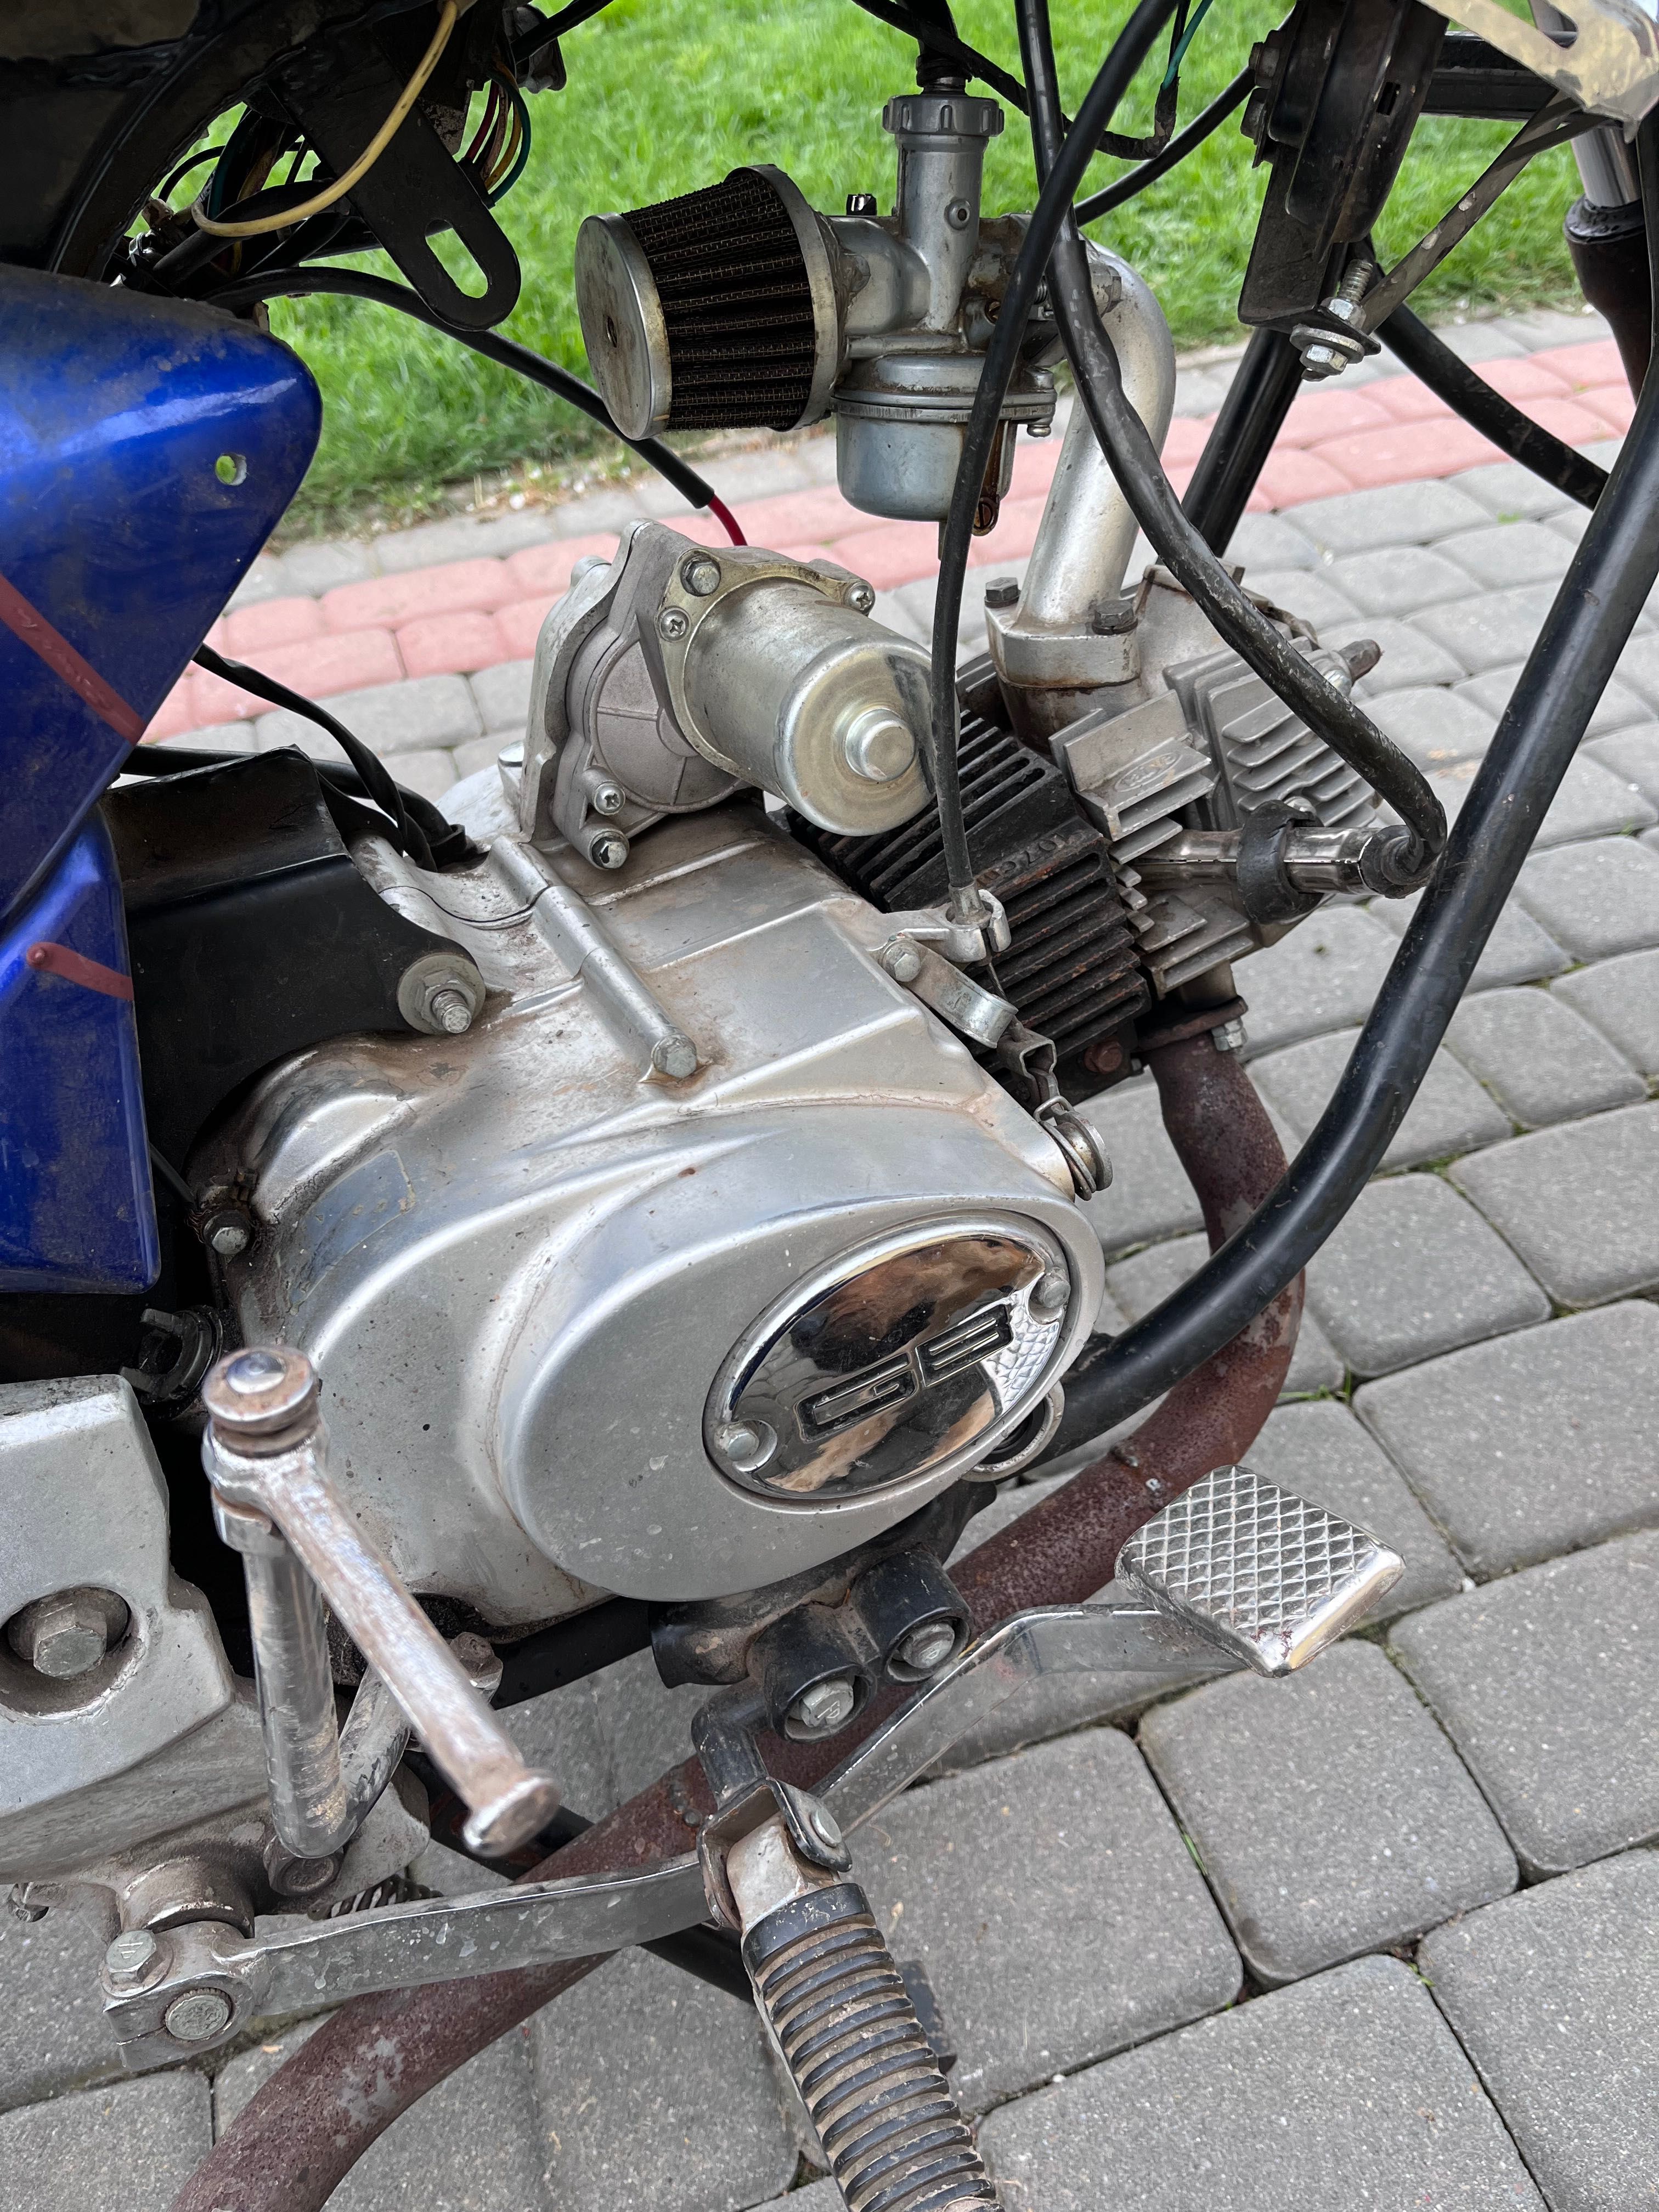 Motocykl motor yamasaki ( Yamaha )